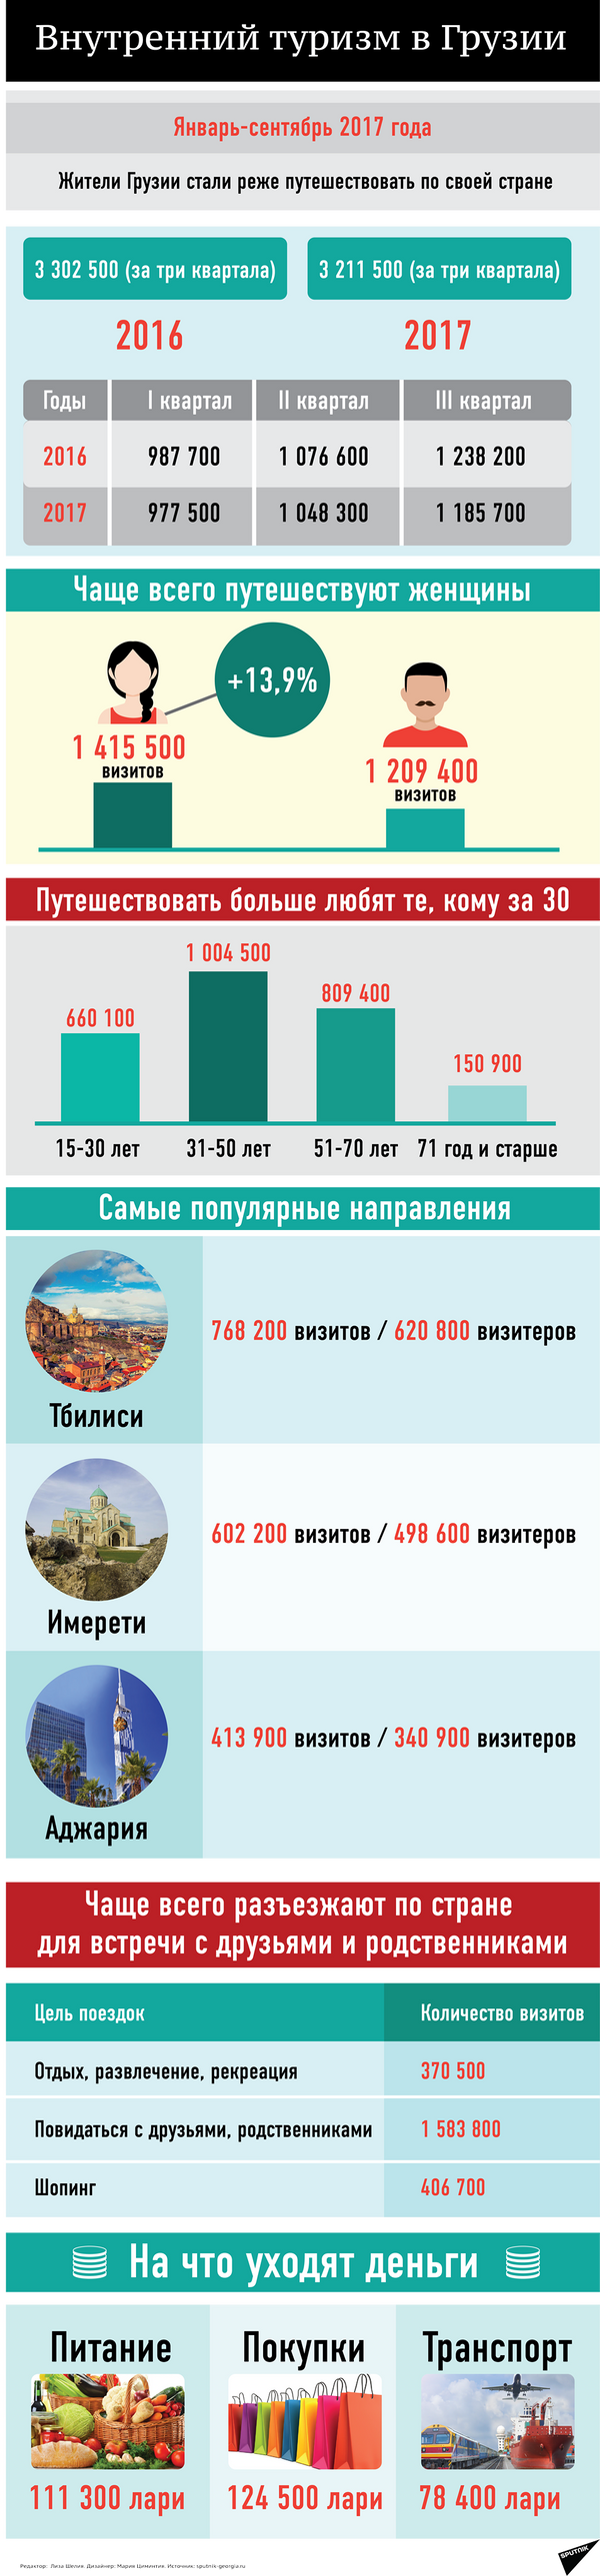 Внутренний туризм в Грузии январь-сентябрь 2017 - Sputnik Грузия